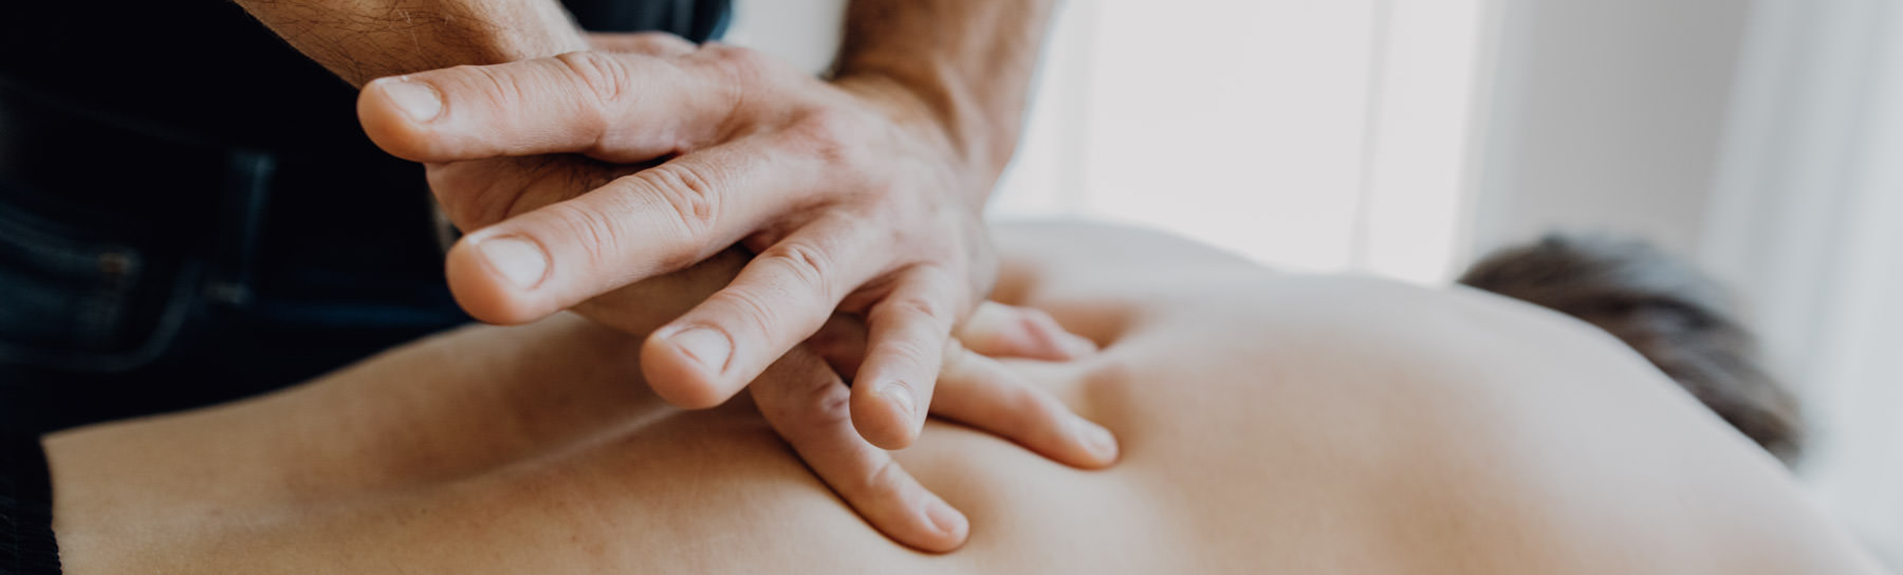 Physiotherapeut behandelt Rücken eines Patienten mit Manueller Therapie